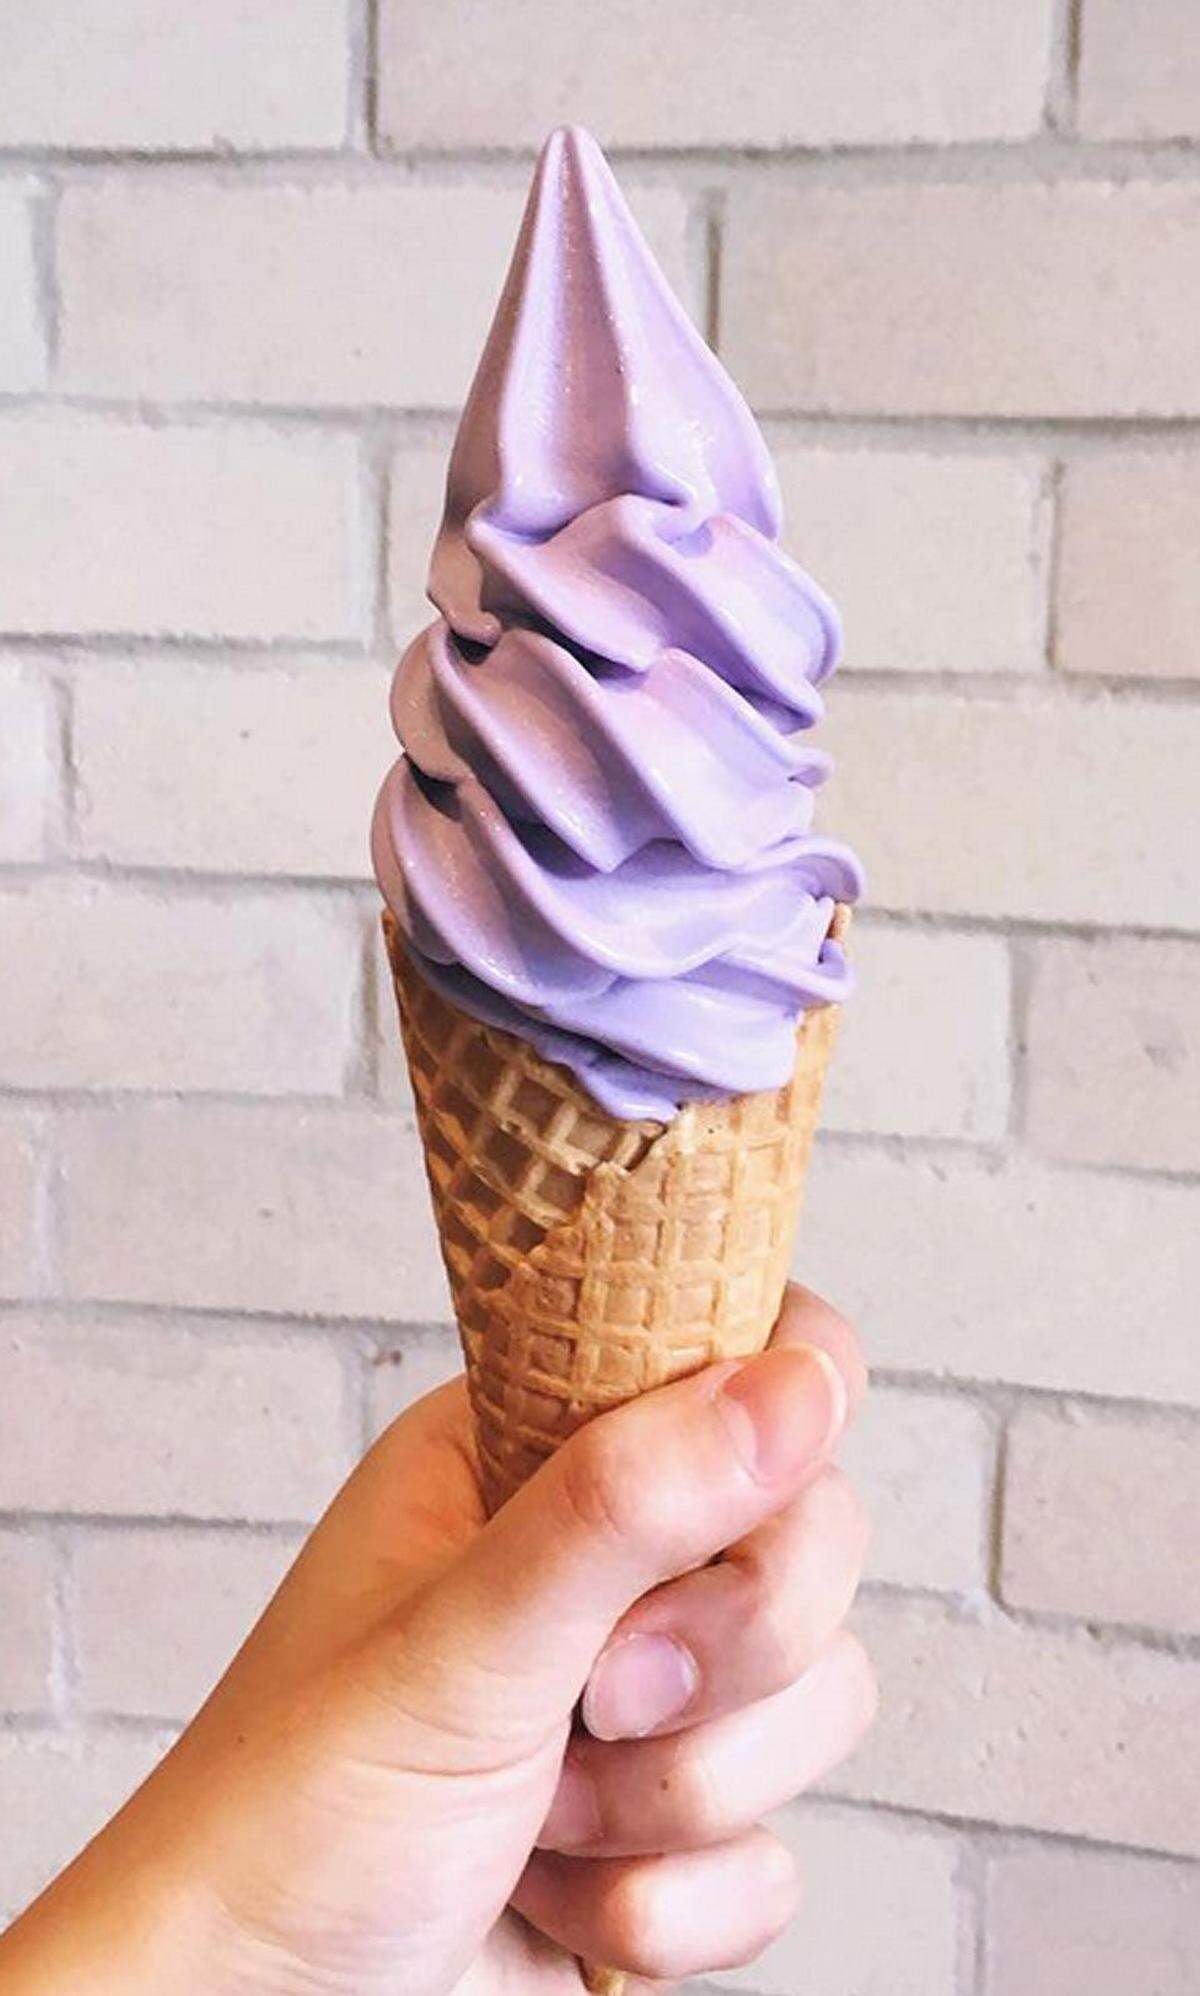 Kuchen, Donuts, Eis - in letzter Zeit nehmen Desserts immer mehr einen violetten Grundton an. Dabei soll es sich aber nicht immer um billige Lebensmittelfarbe handeln, sondern um die Ube-Wurzel. 